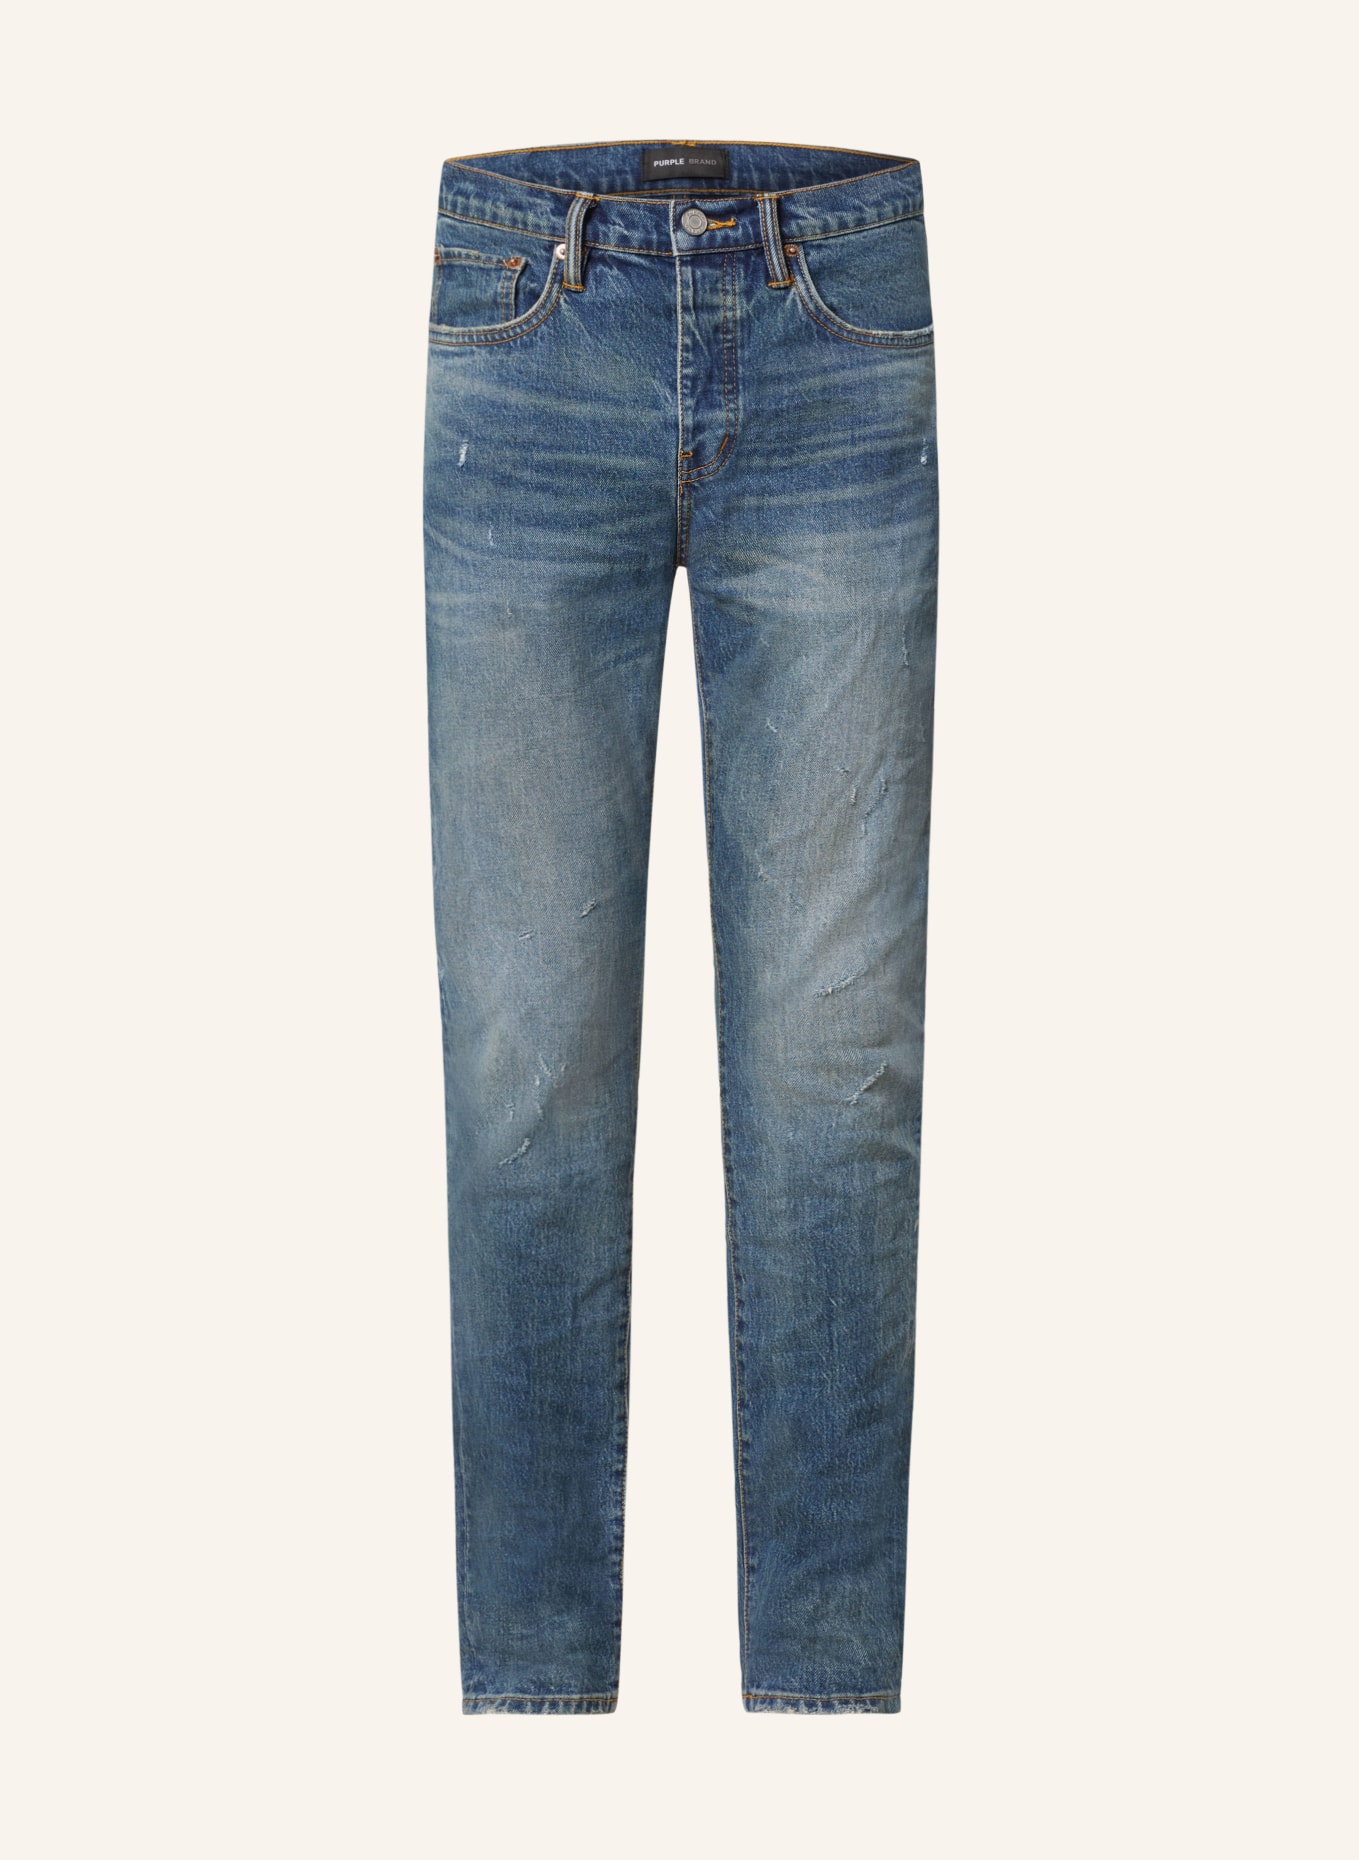 PURPLE BRAND Destroyed jeans skinny fit, Color: DK INDIGO (Image 1)